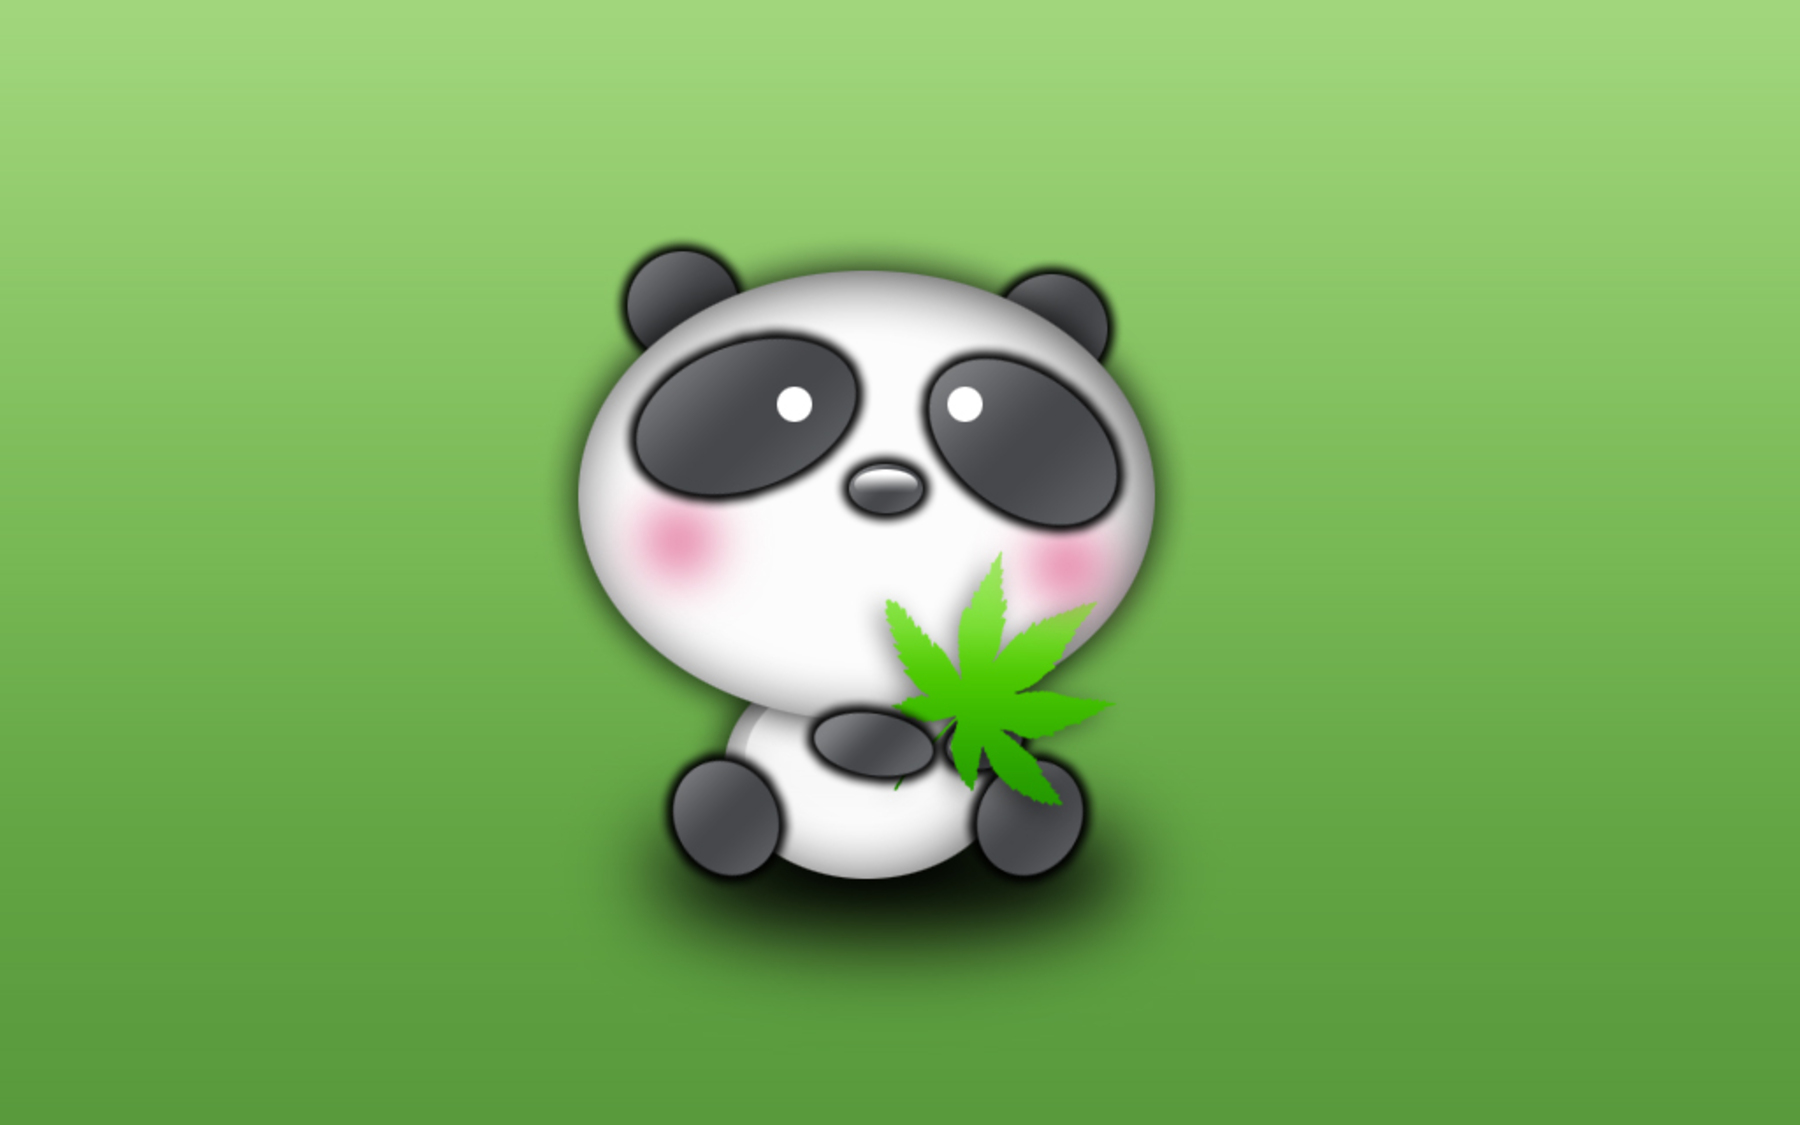 Cute Panda Wallpaper Image For Desktop